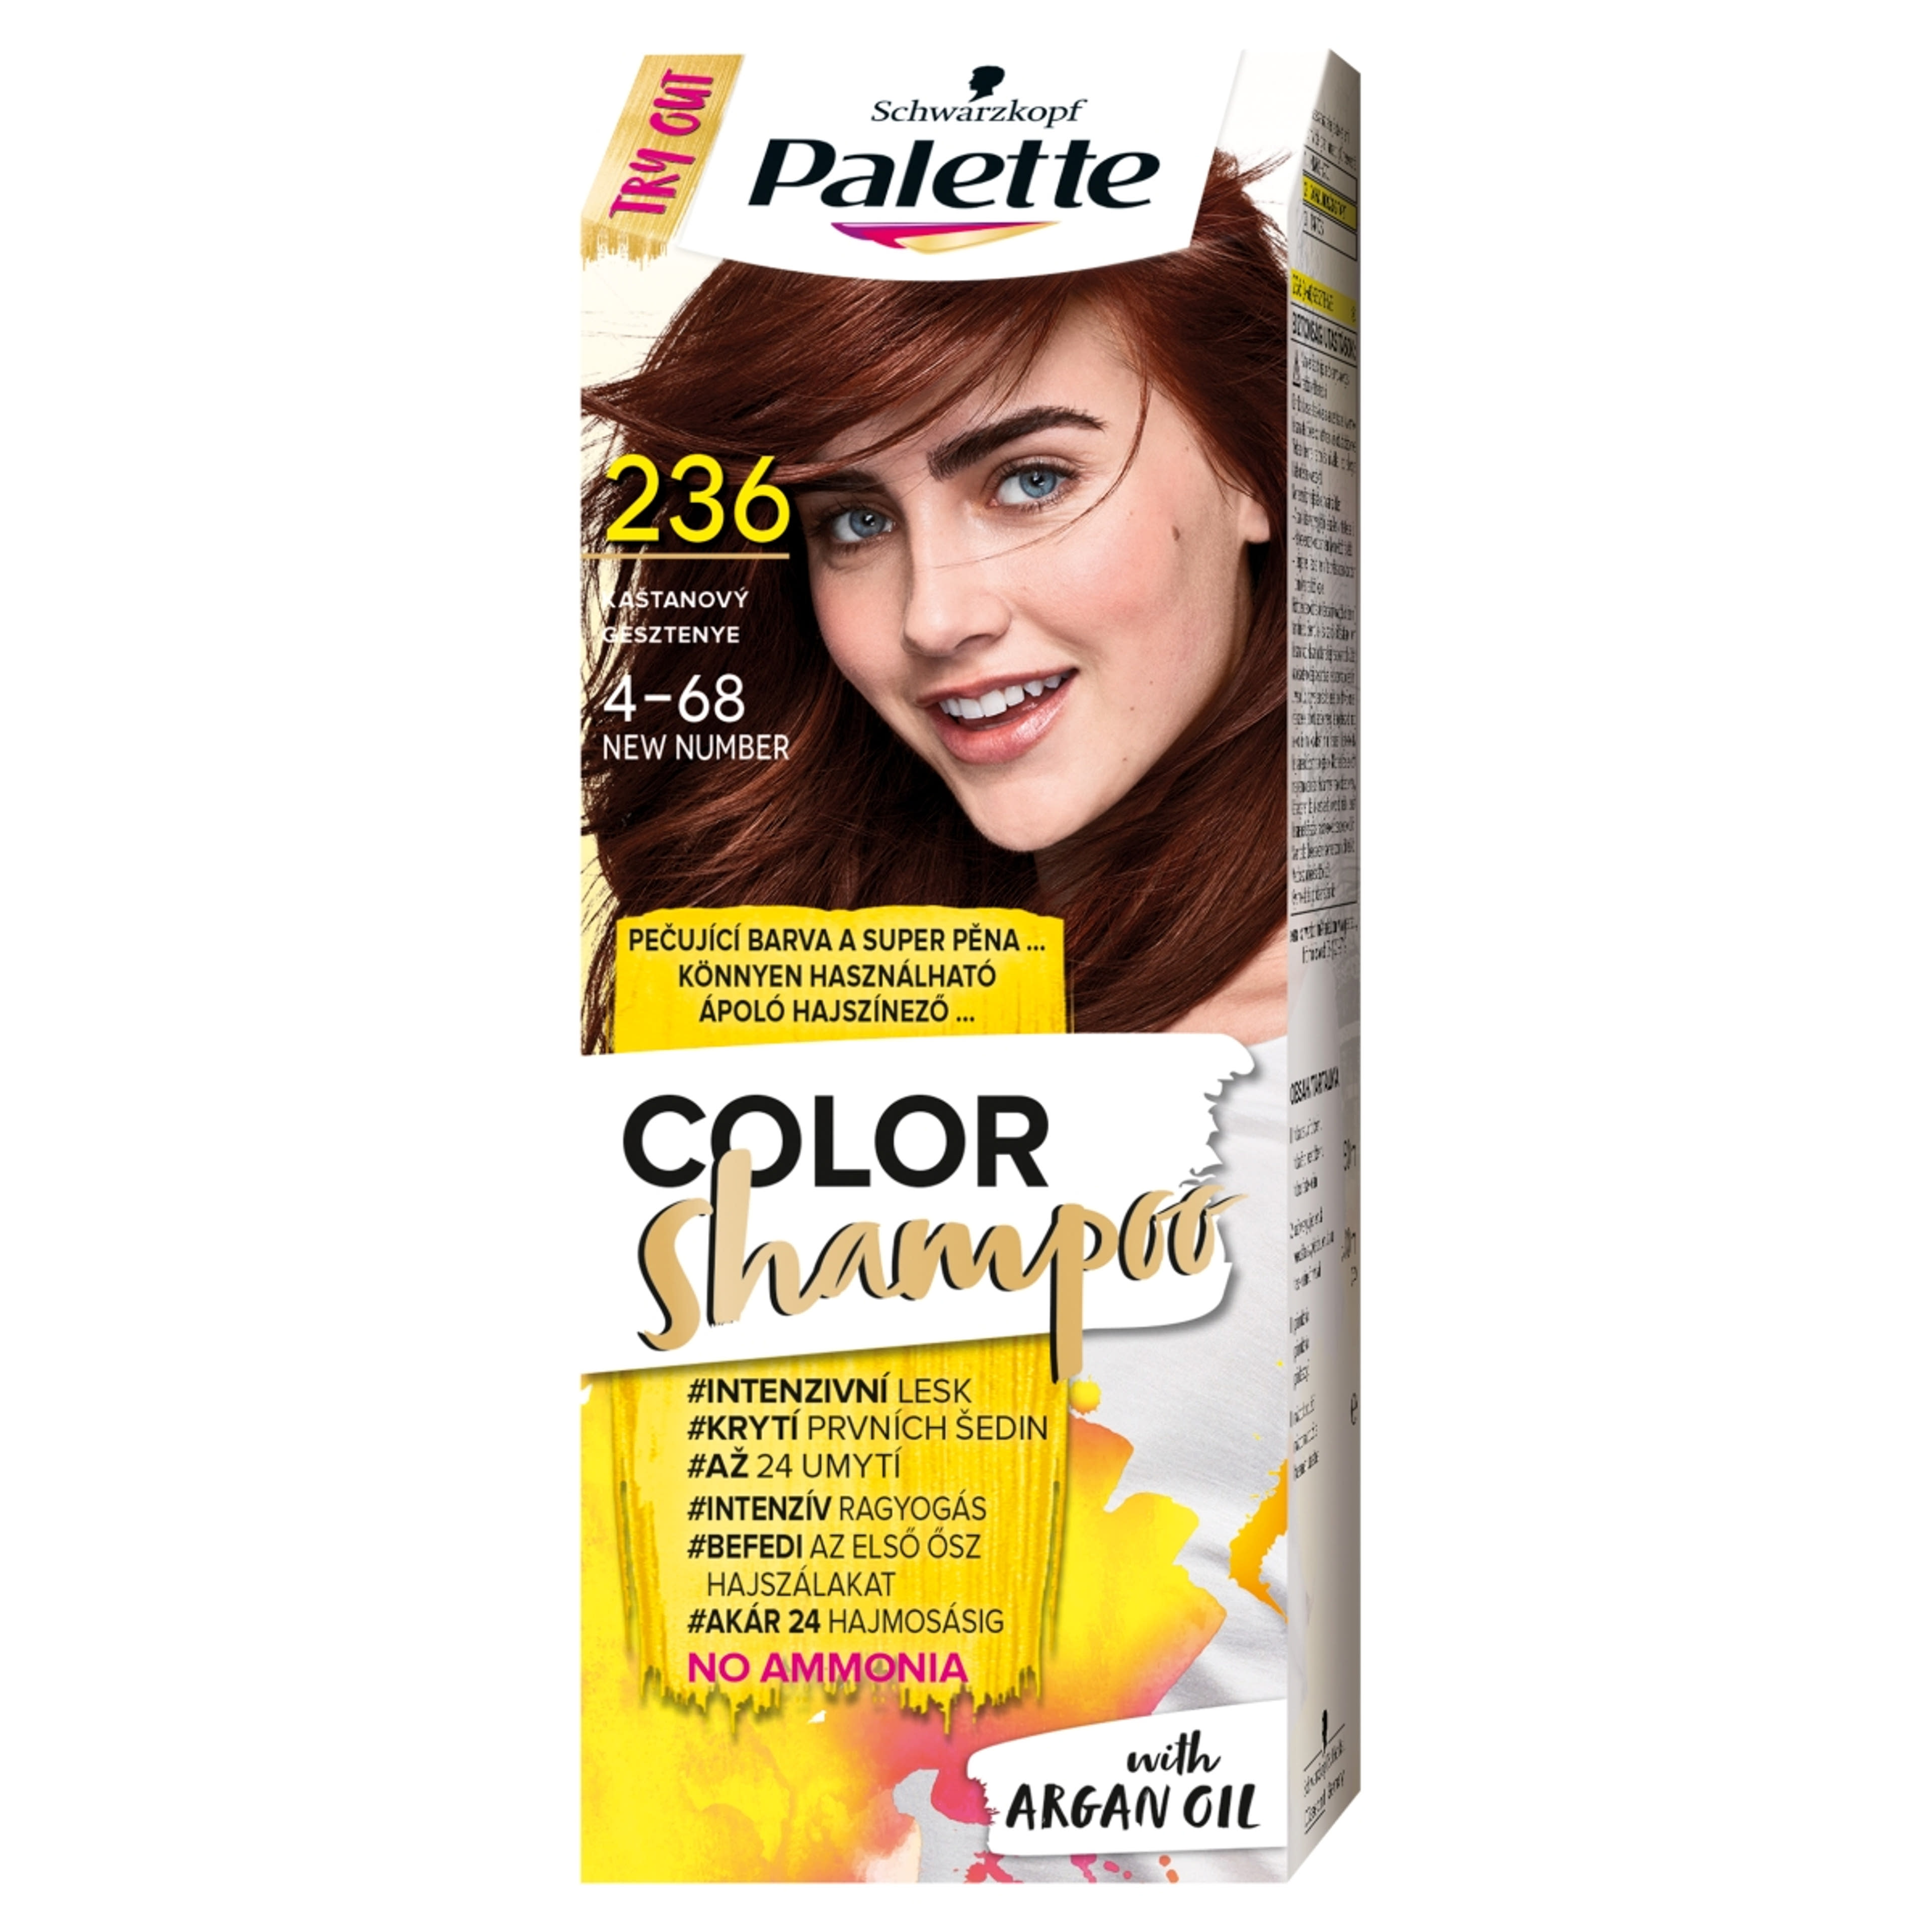 Schwarzkopf Palette Color Shampoo hajfesték 236 gesztenye - 1 db-1